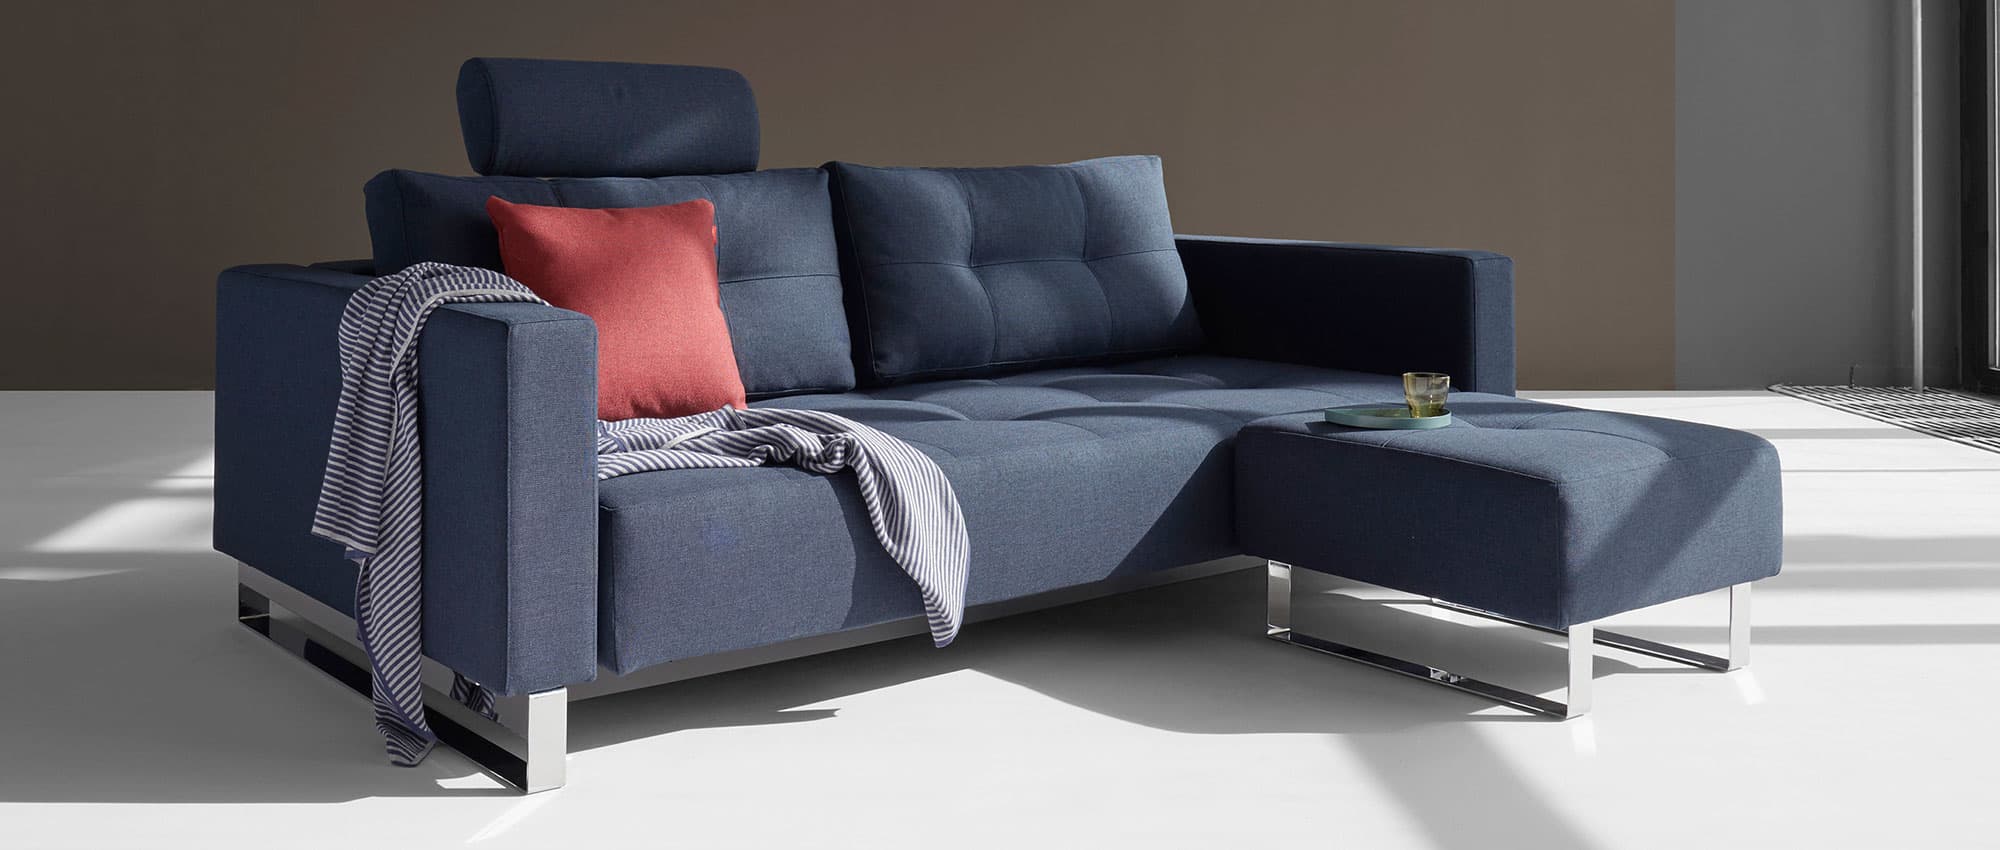 blaues CASSIUS DELUXE EXCESS Lounge Sofa von Innovation mit Zubehör, Gästebett mit Metallfüßen Chrom und Armlehnen - 155x200cm